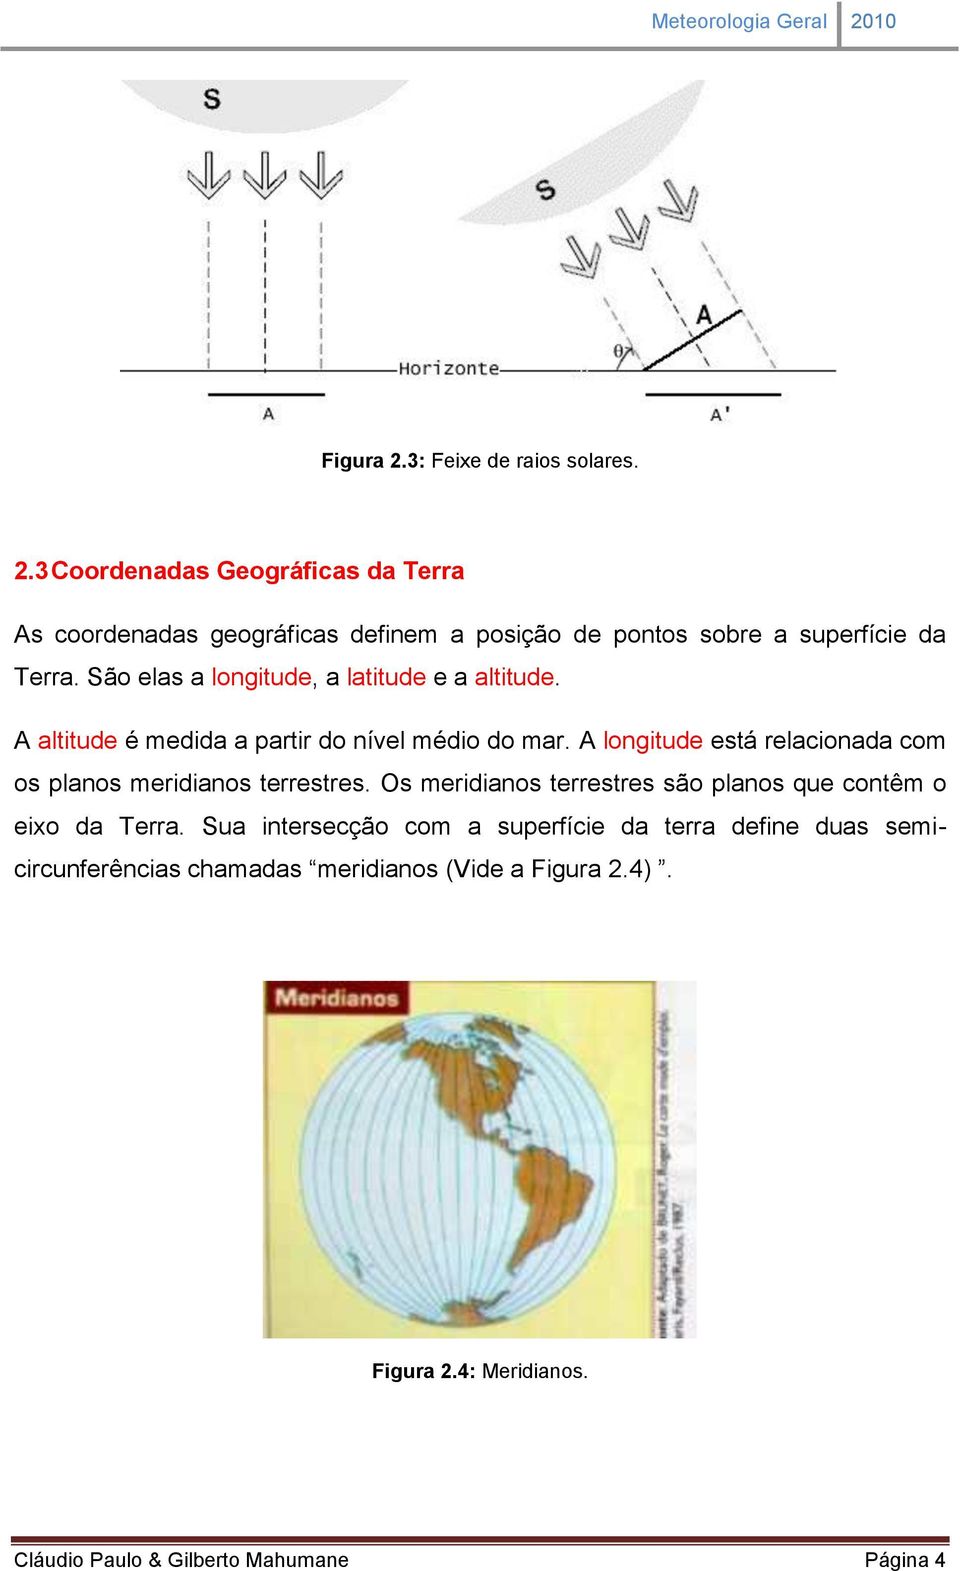 A longitude está relacionada com os planos meridianos terrestres. Os meridianos terrestres são planos que contêm o eixo da Terra.